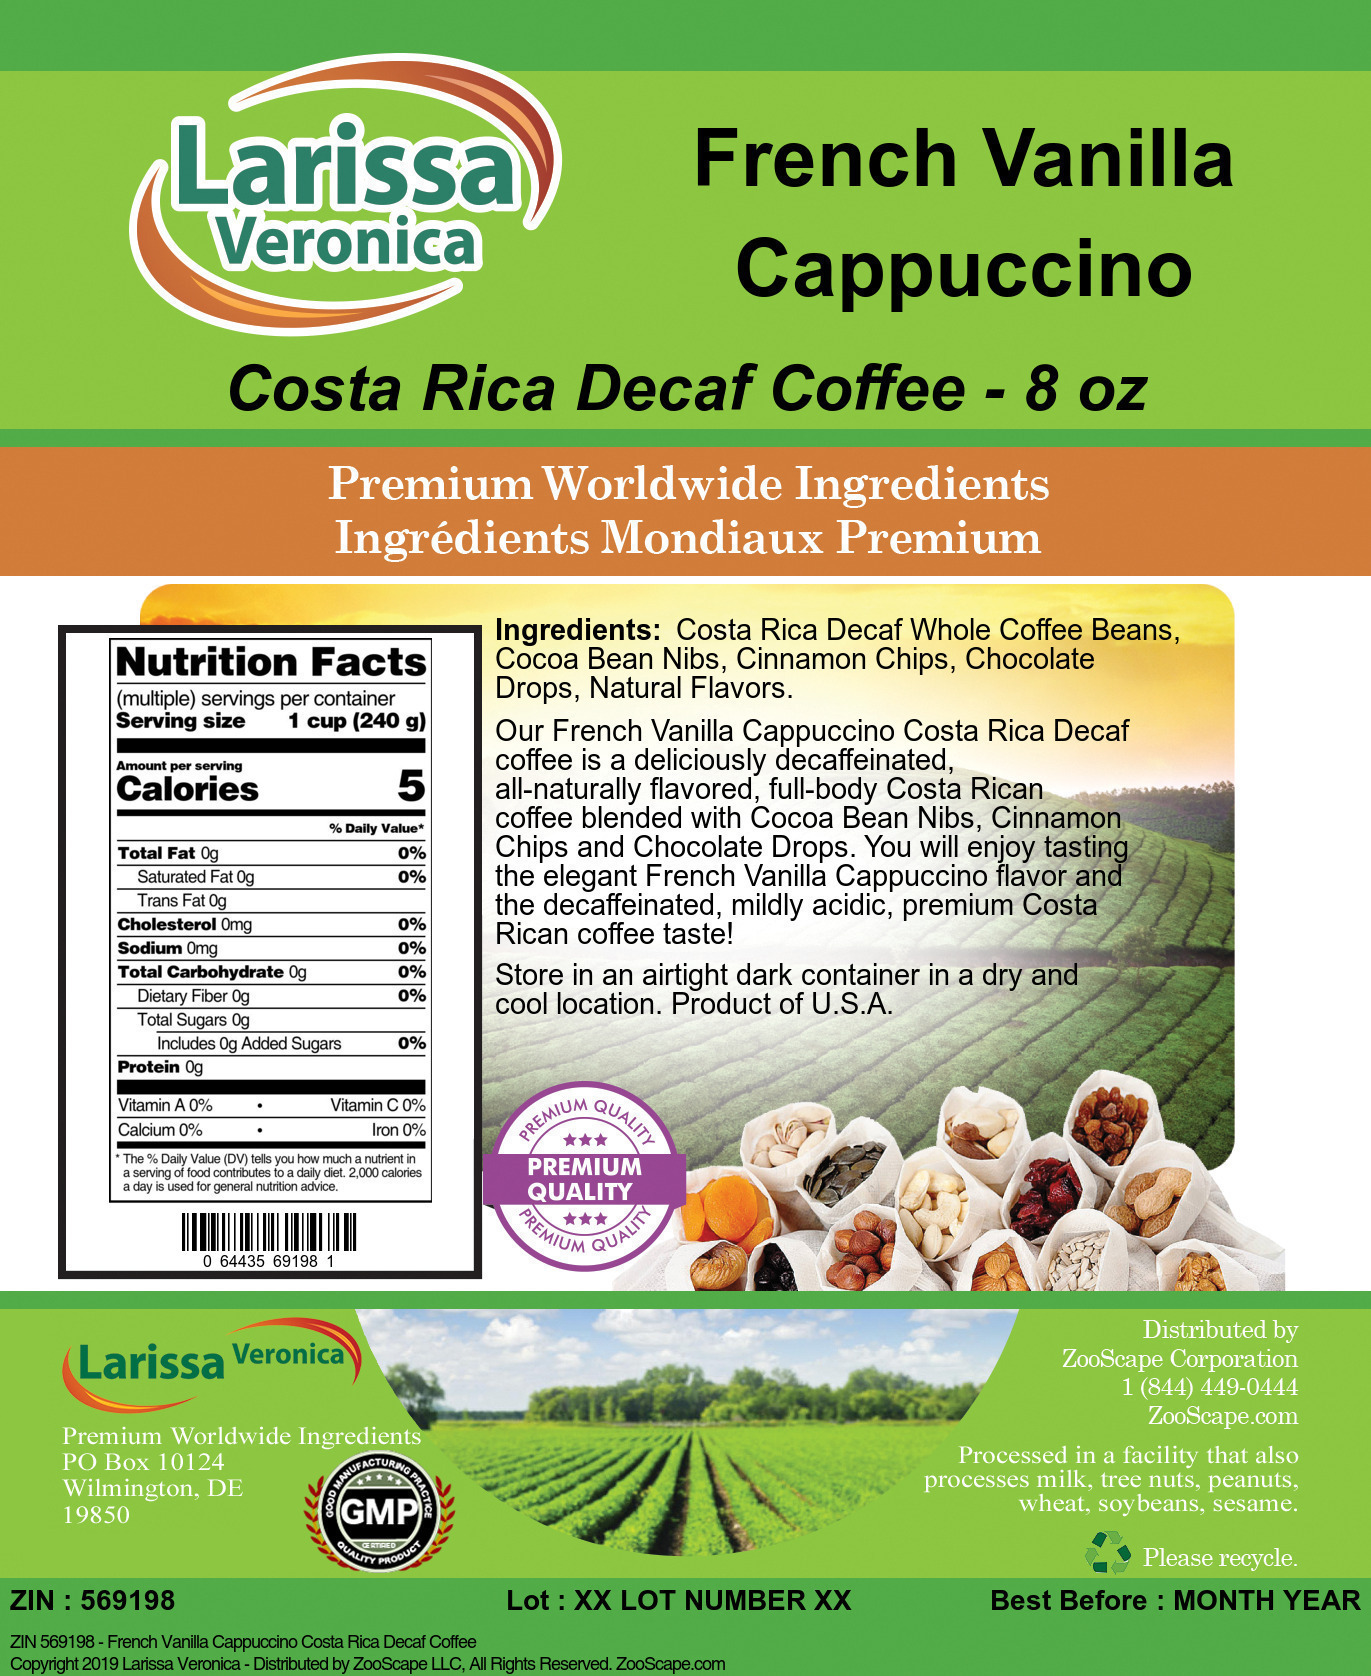 French Vanilla Cappuccino Costa Rica Decaf Coffee - Label